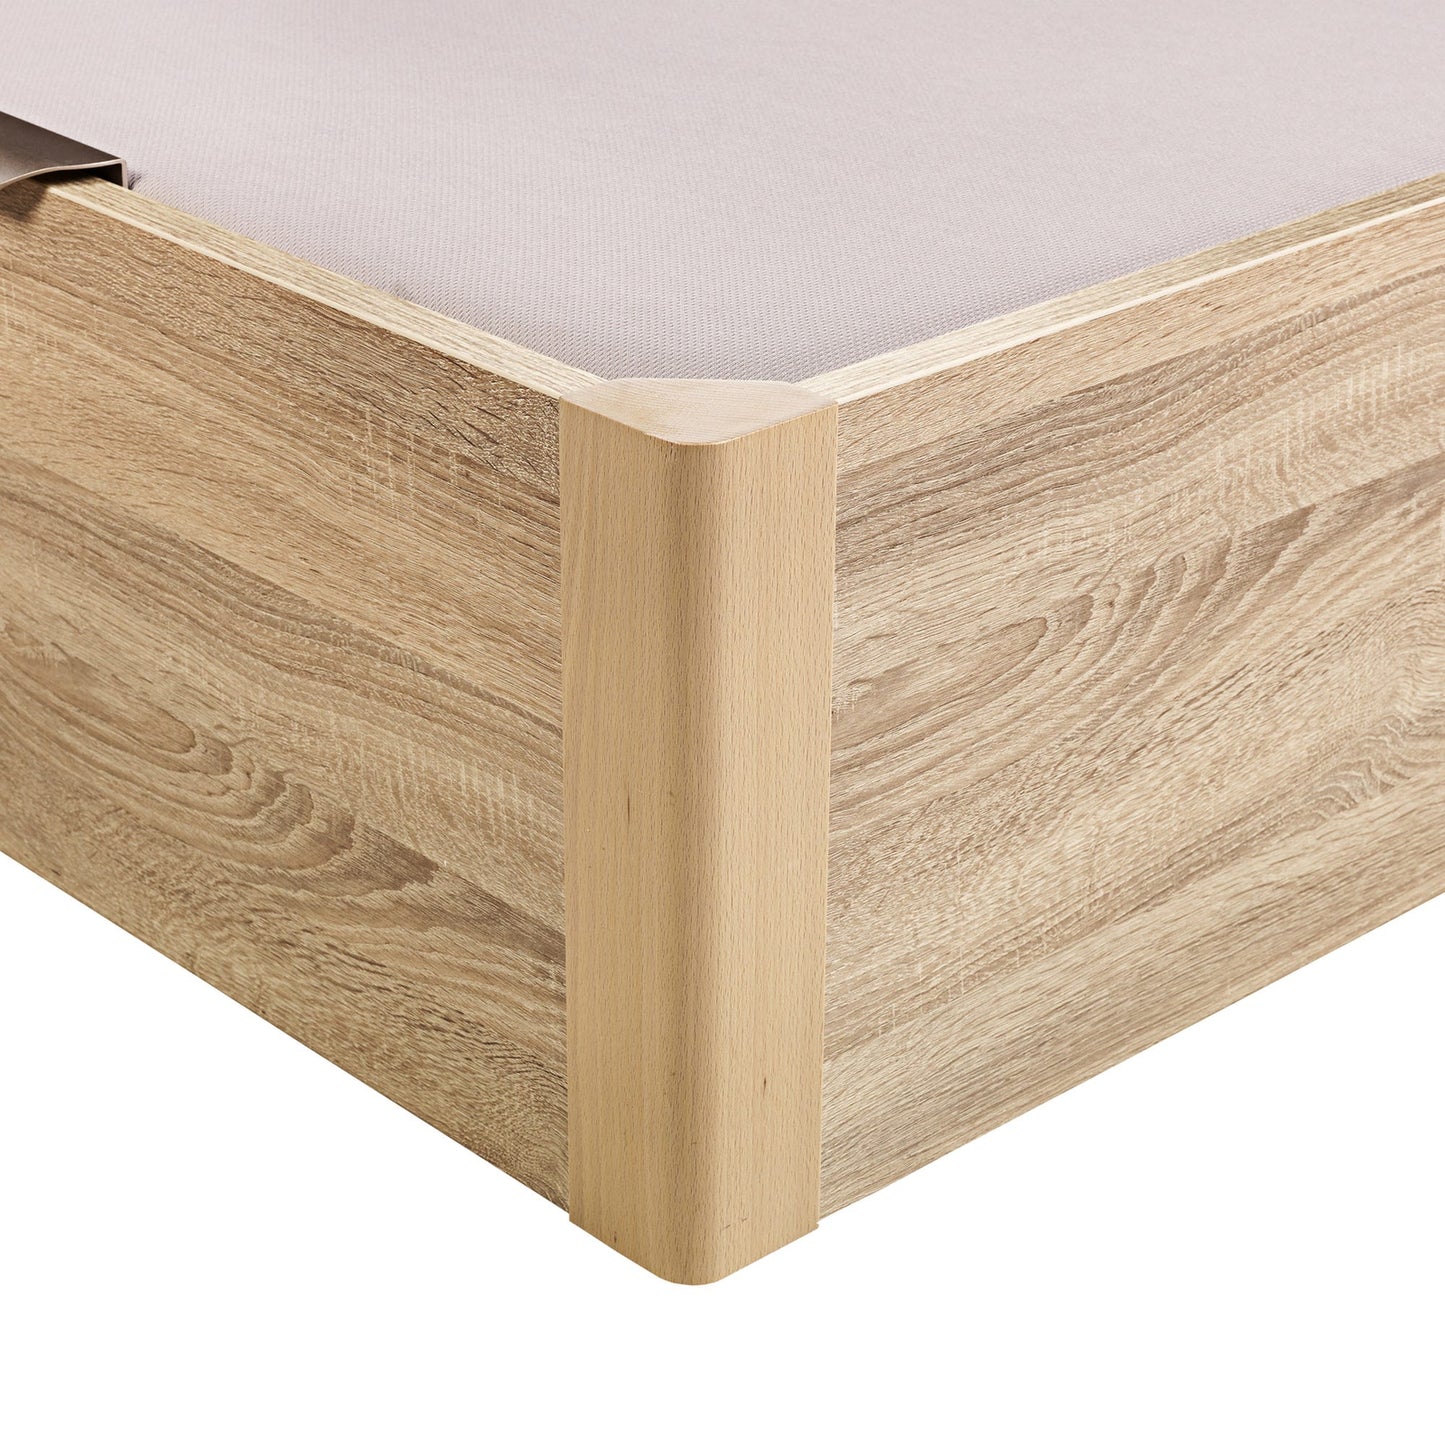 Canapé abatible de madera juvenil de color natural - DESIGN JUV - 105x200